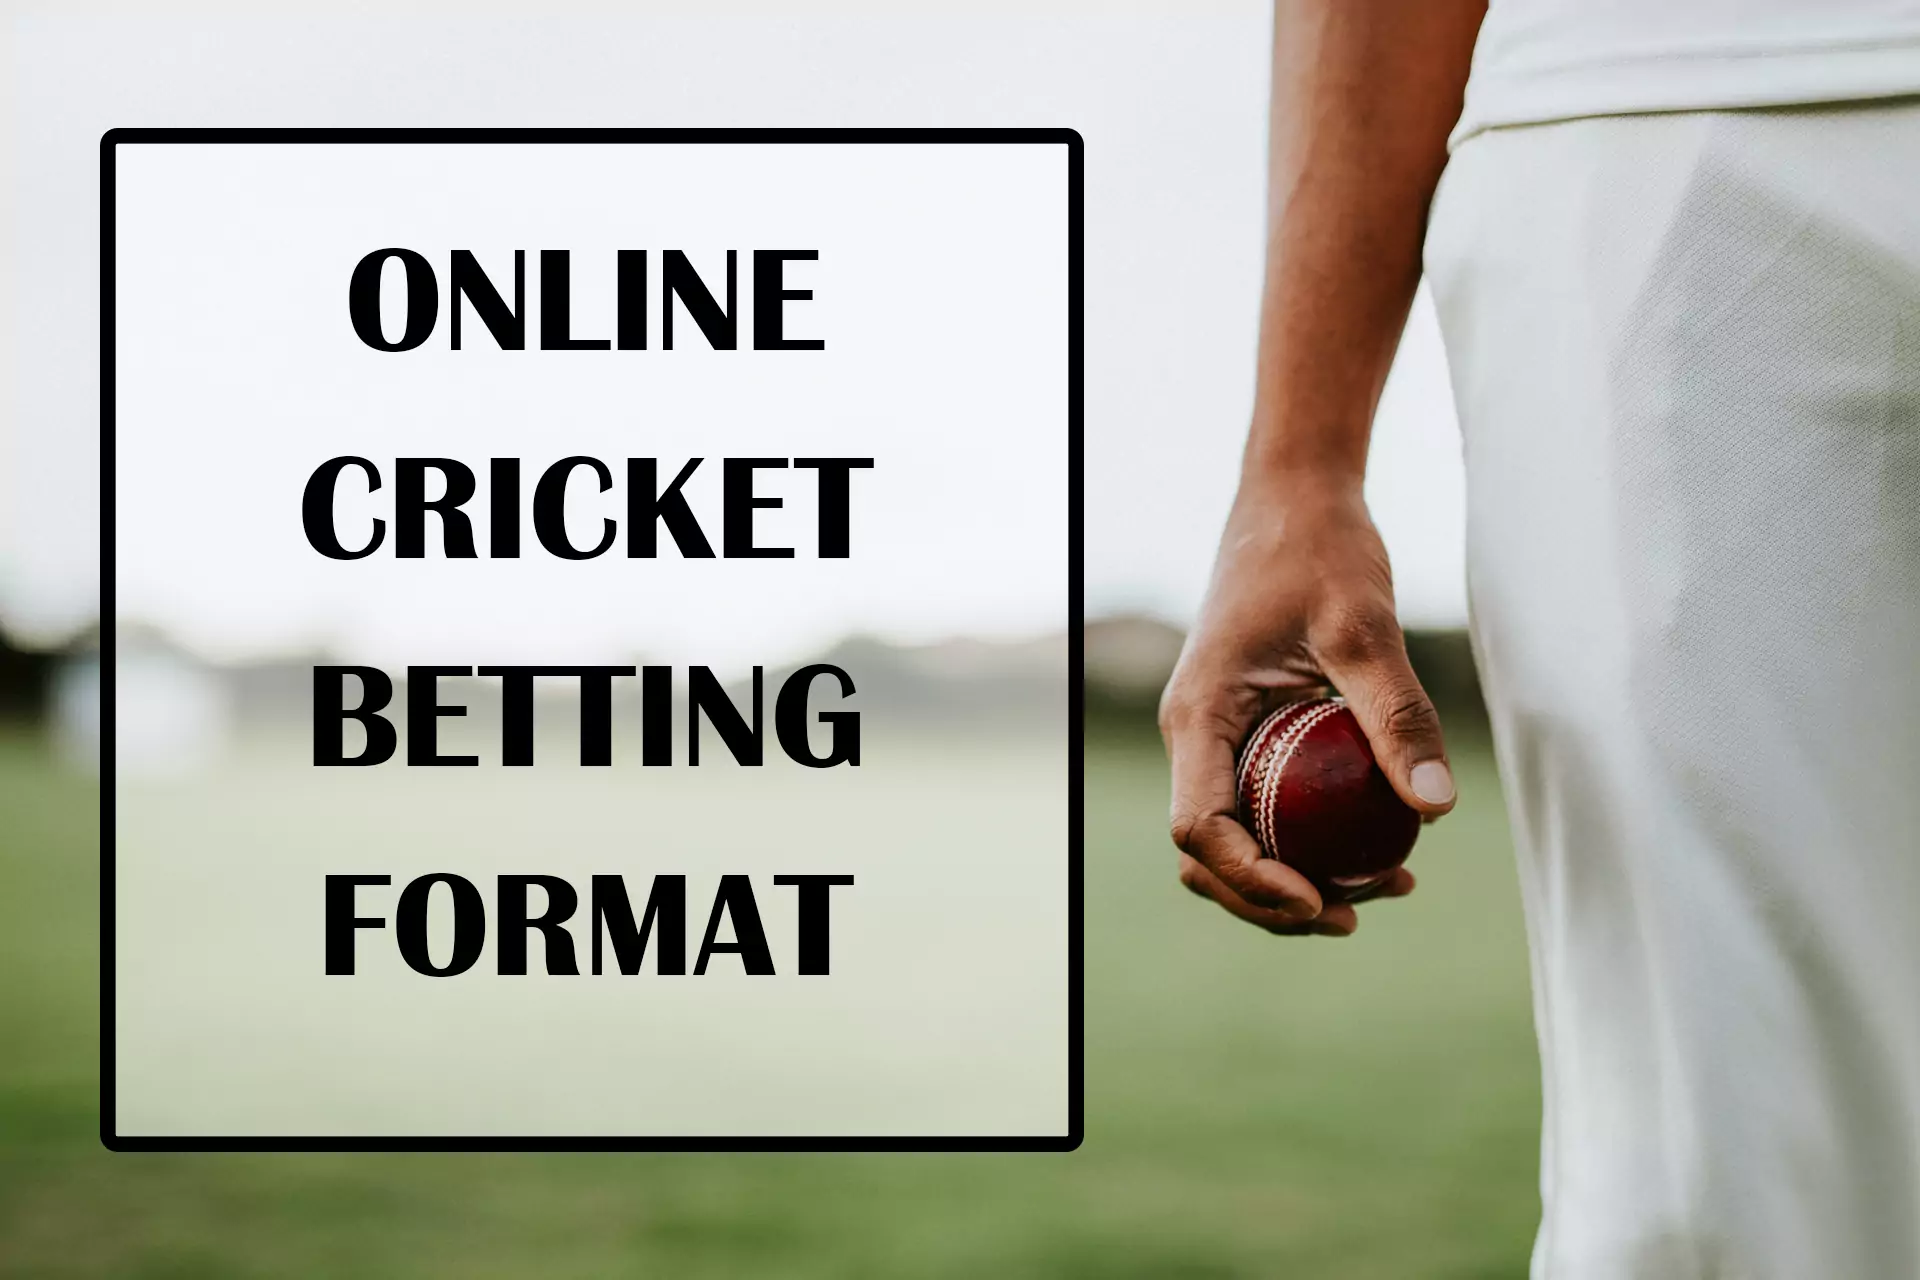 सट्टेबाज भारत में ऑनलाइन क्रिकेट सट्टेबाजी के कई प्रारूप प्रदान करते हैं ।